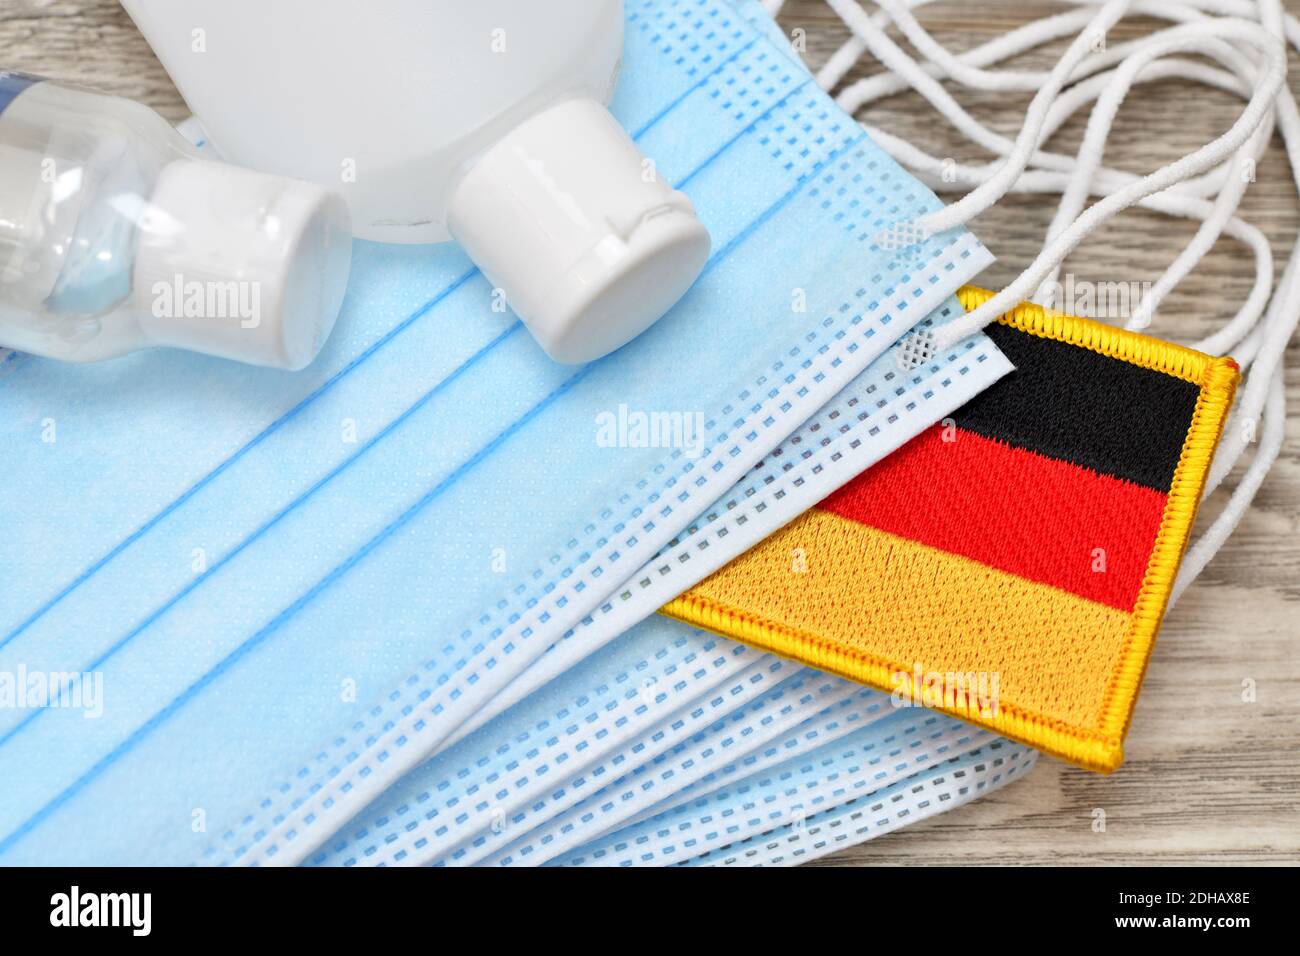 Schutzmasken, Desinfektionsmittel und deutsche Fahne, Symbolfoto Nationale Gesundheitsreserve Foto de stock